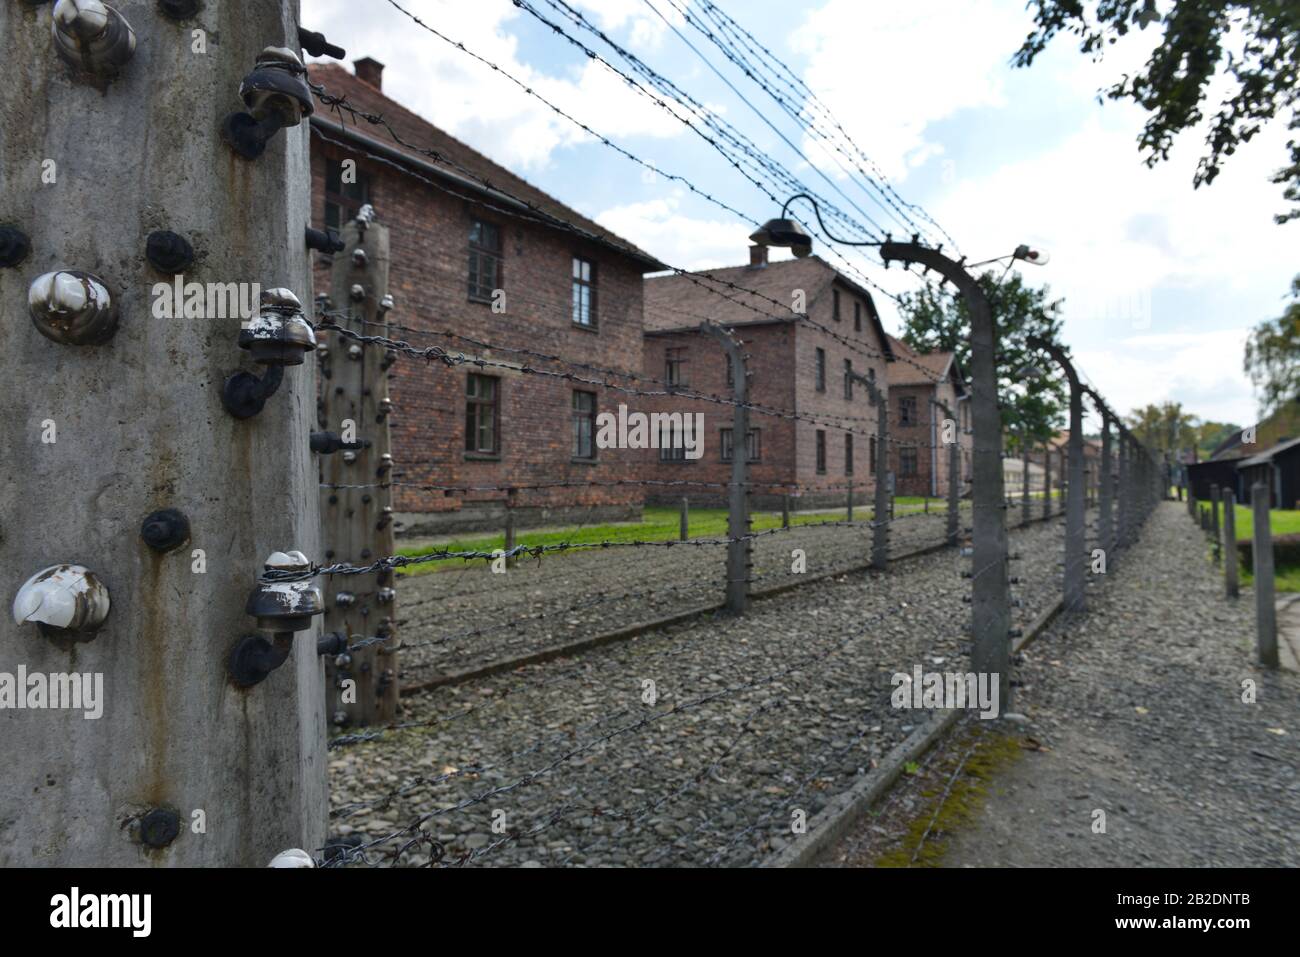 Stacheldraht, Lagergebäude, Stammlager I, Konzentrationslager, Auschwitz-Birkenau, Auschwitz, Polen Stock Photo